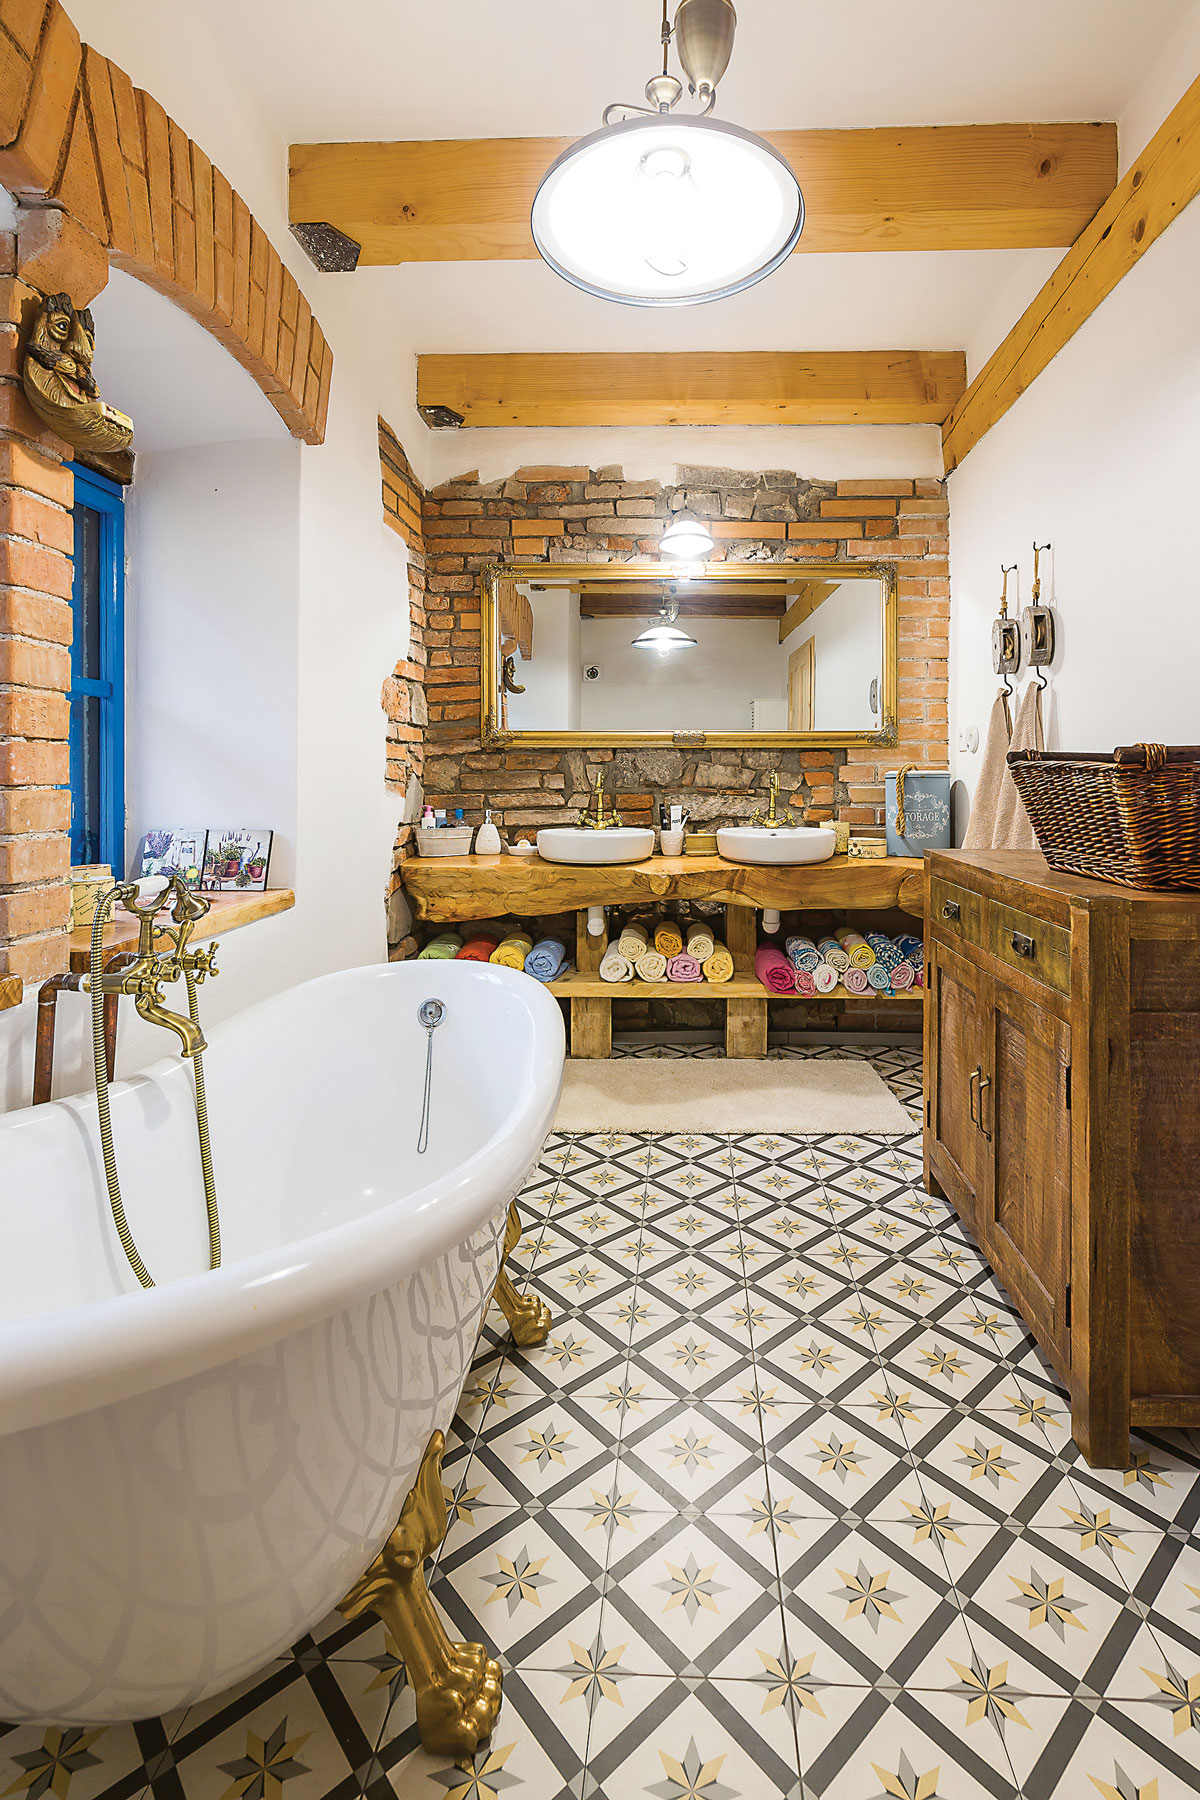 koupelna ve venkovském stylu s vanou na zlatých nožičkách, přiznanou cihlovou zdí a umývadly položenými na masivním kusu opracovaného dřeva